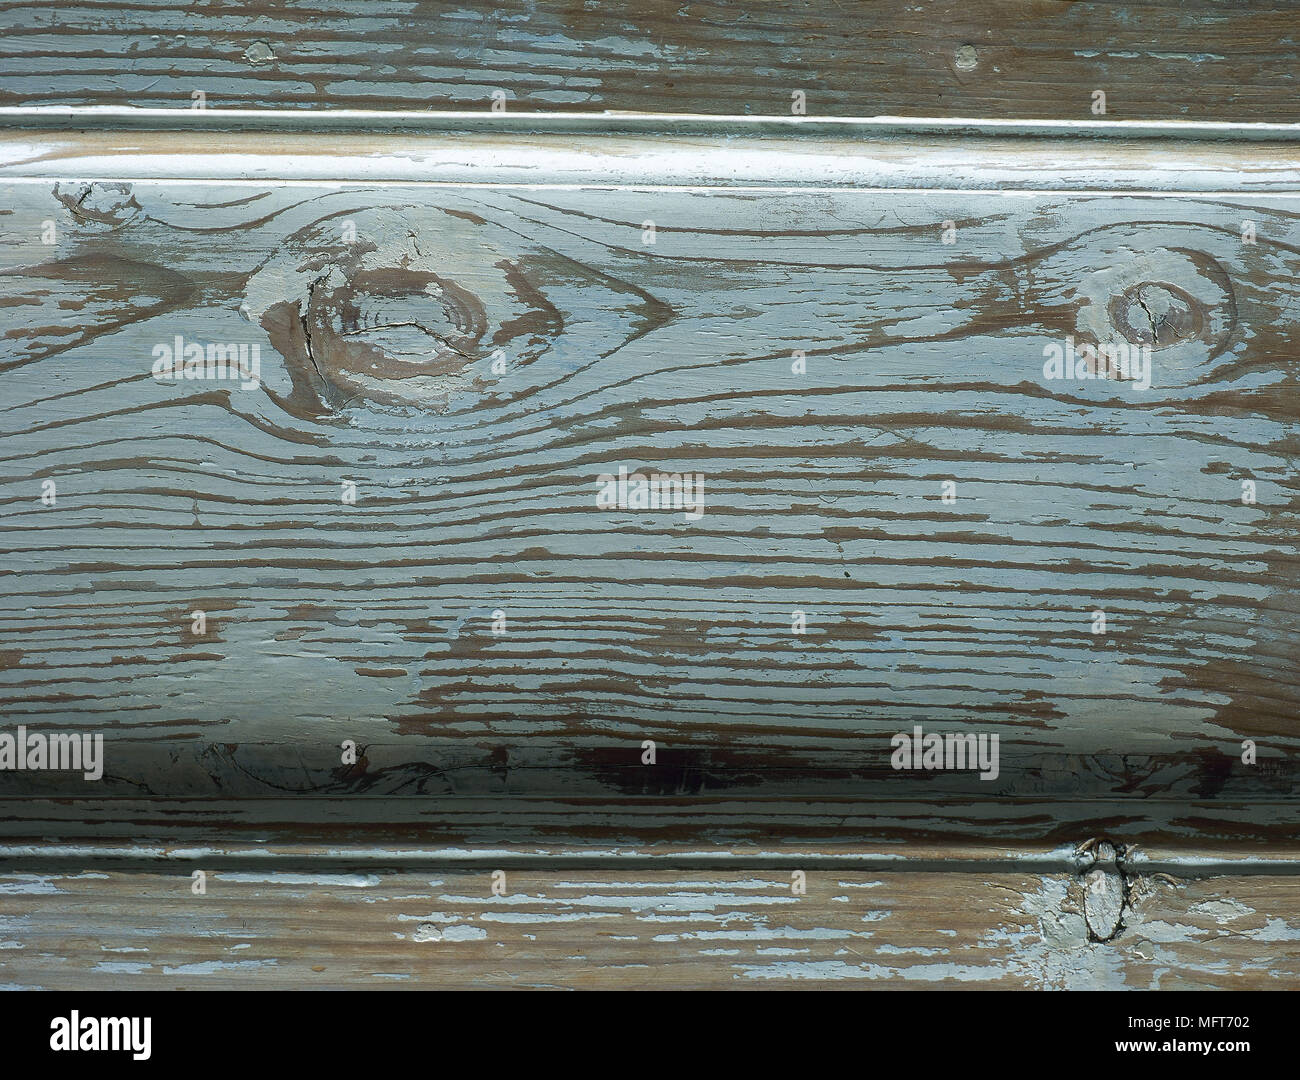 Panneaux en bois peint rustique en difficulté détails intérieurs textures rugueuses matériaux naturels Banque D'Images